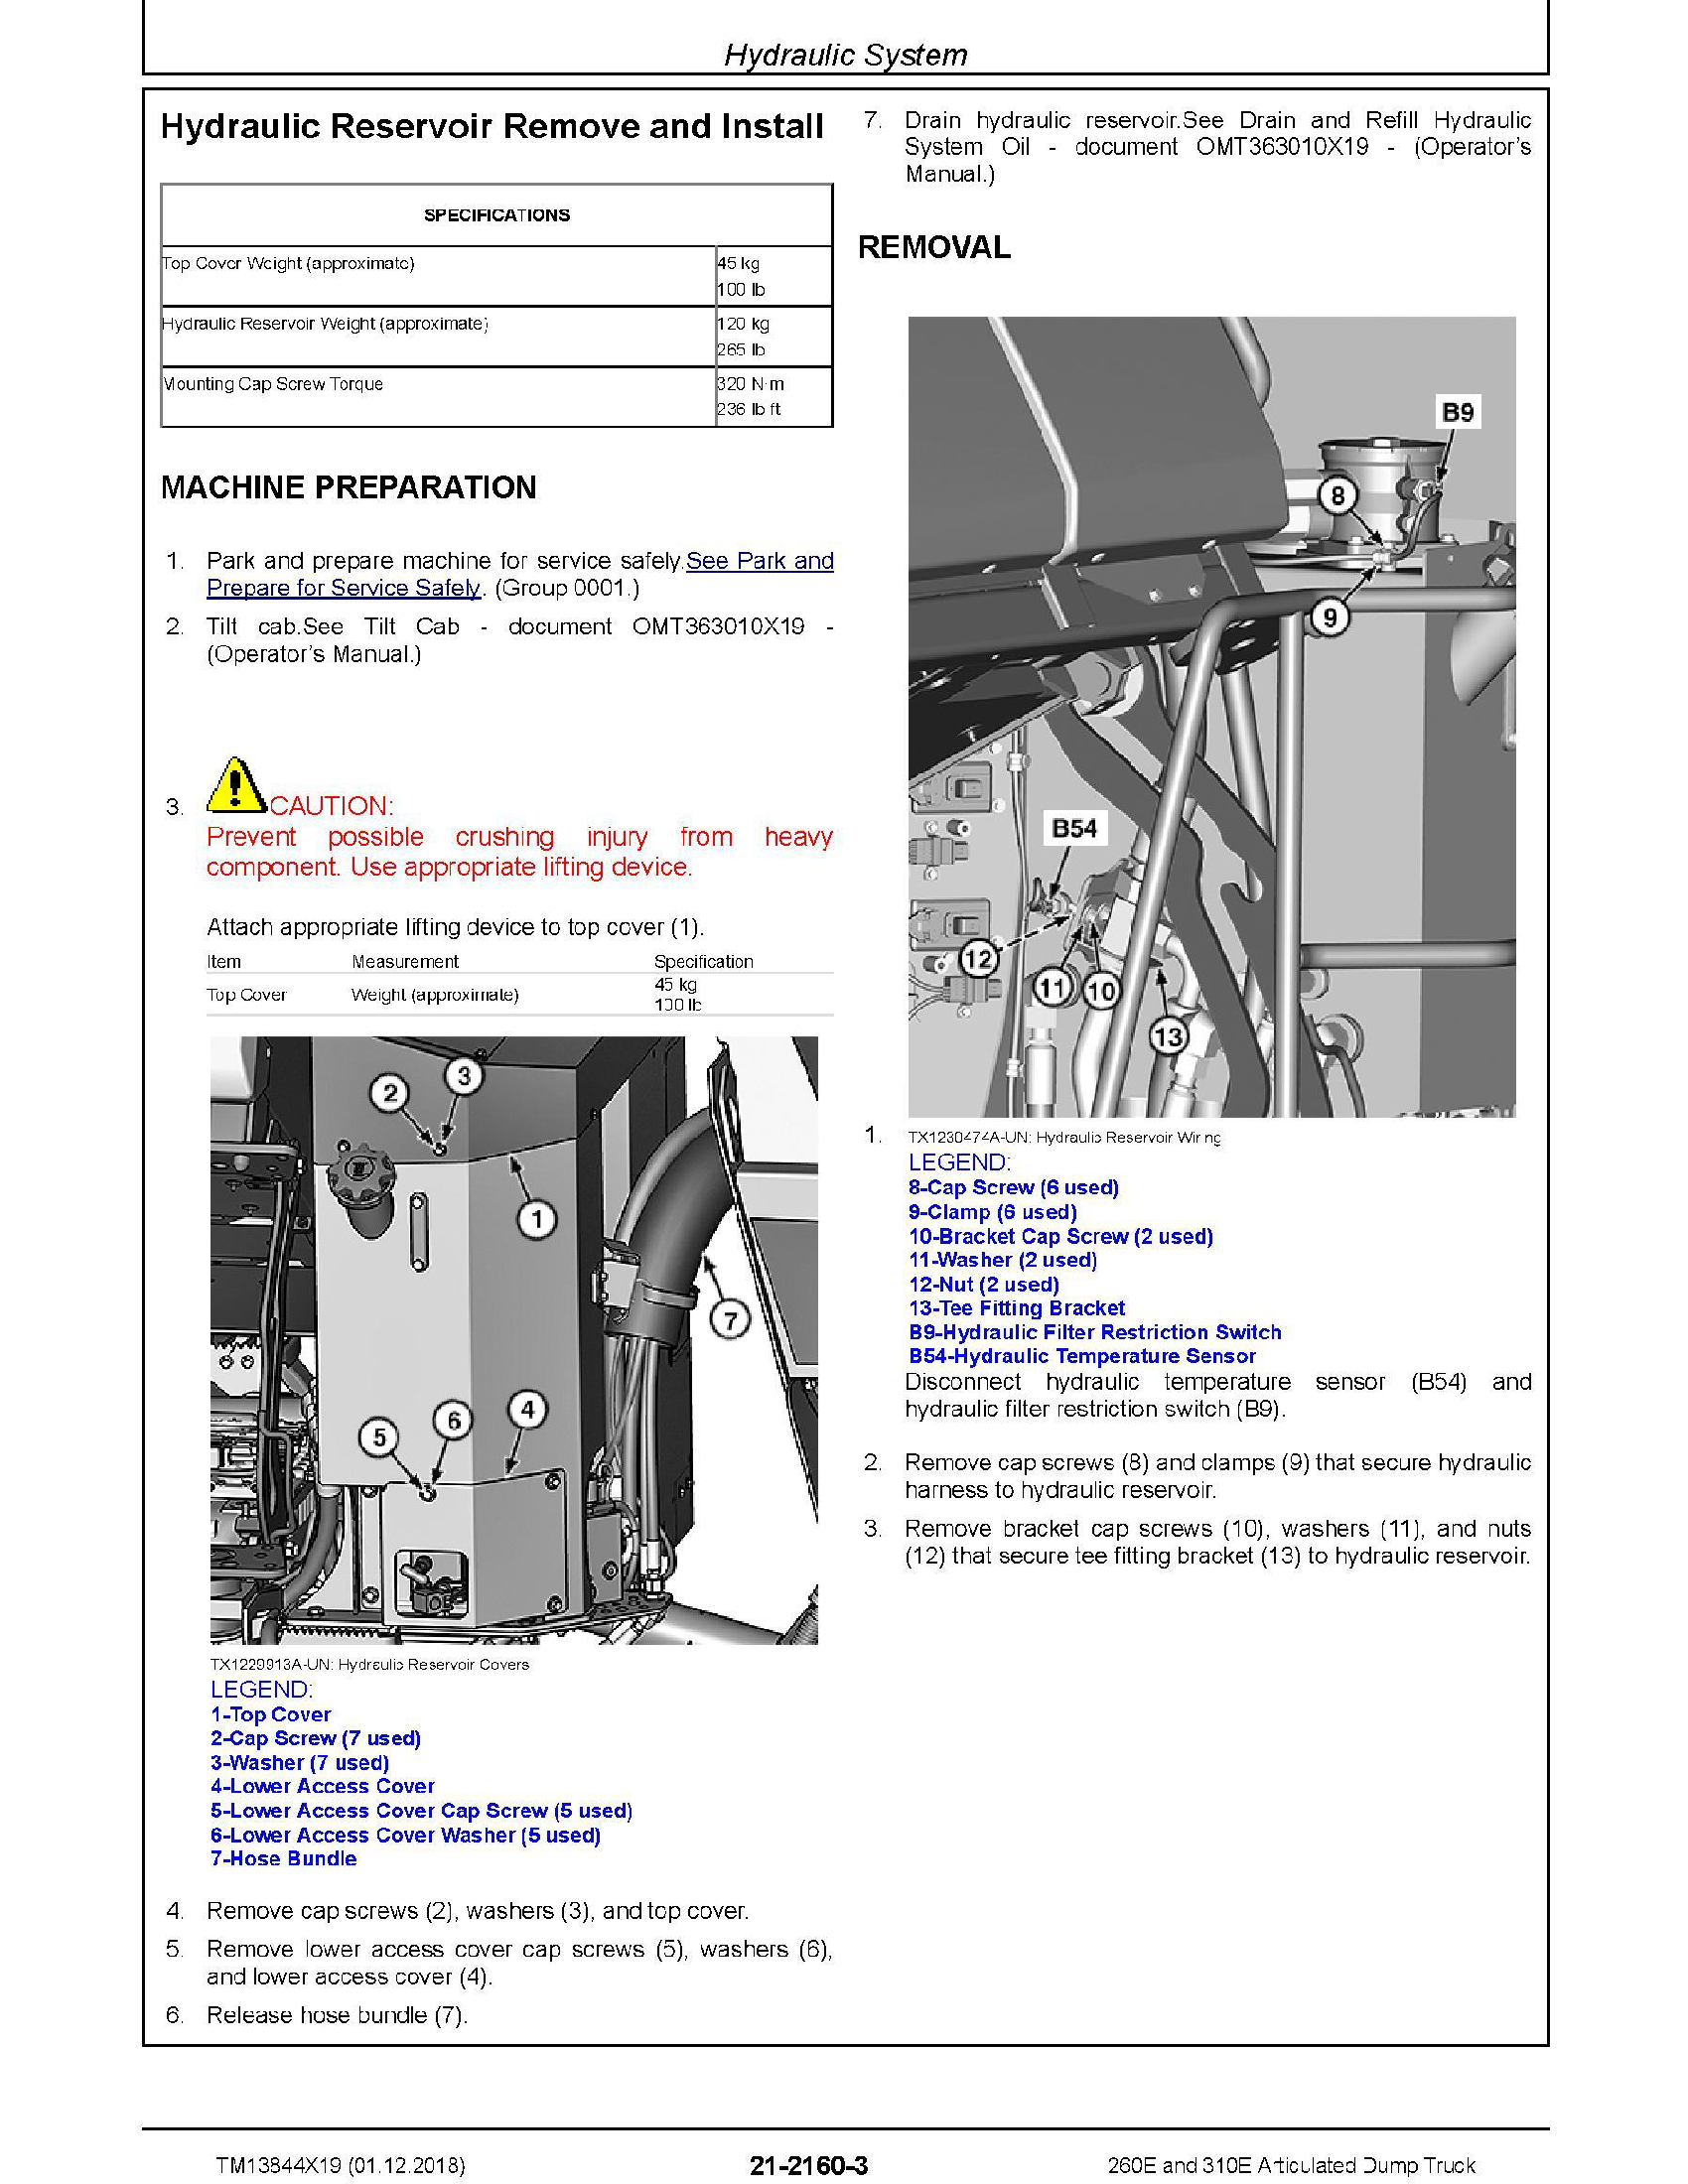 John Deere 5042C manual pdf